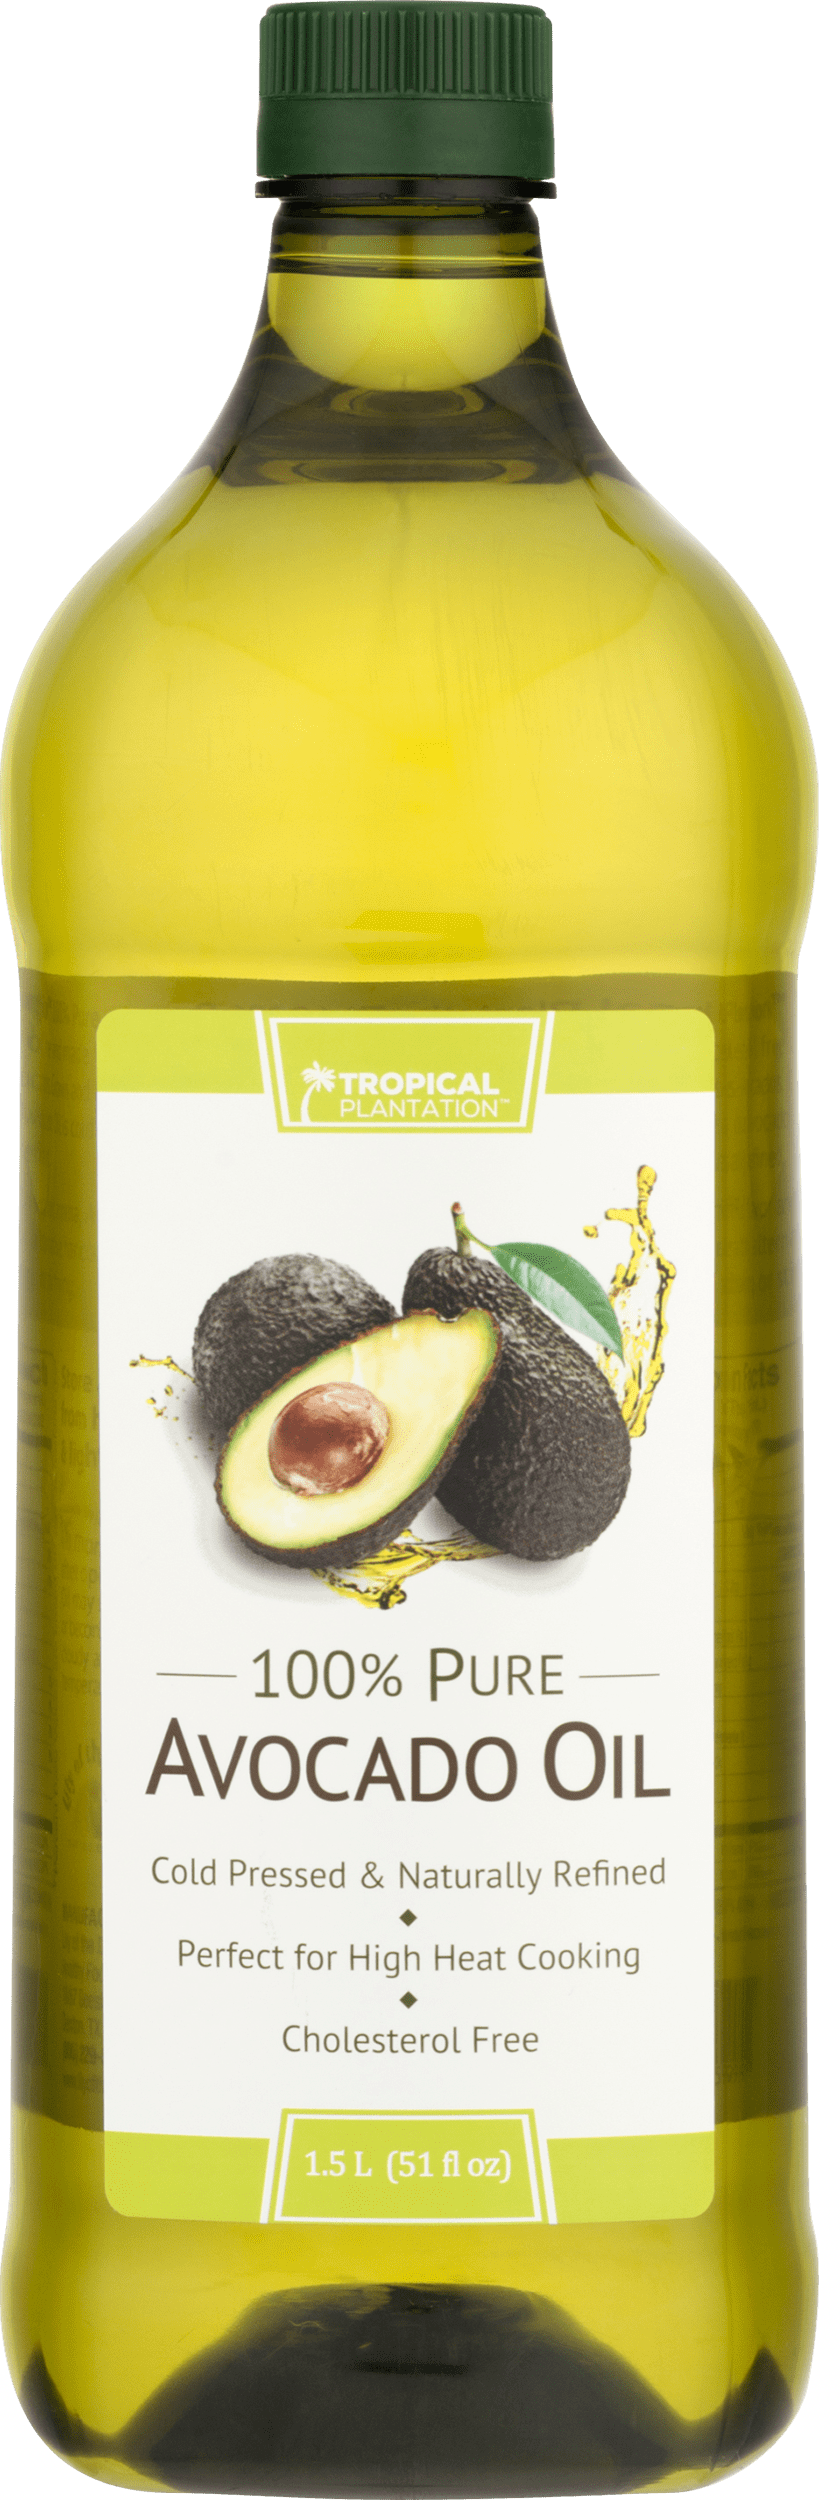 Tropical Plantation 100% Pure Avocado Oil, 51 fl oz